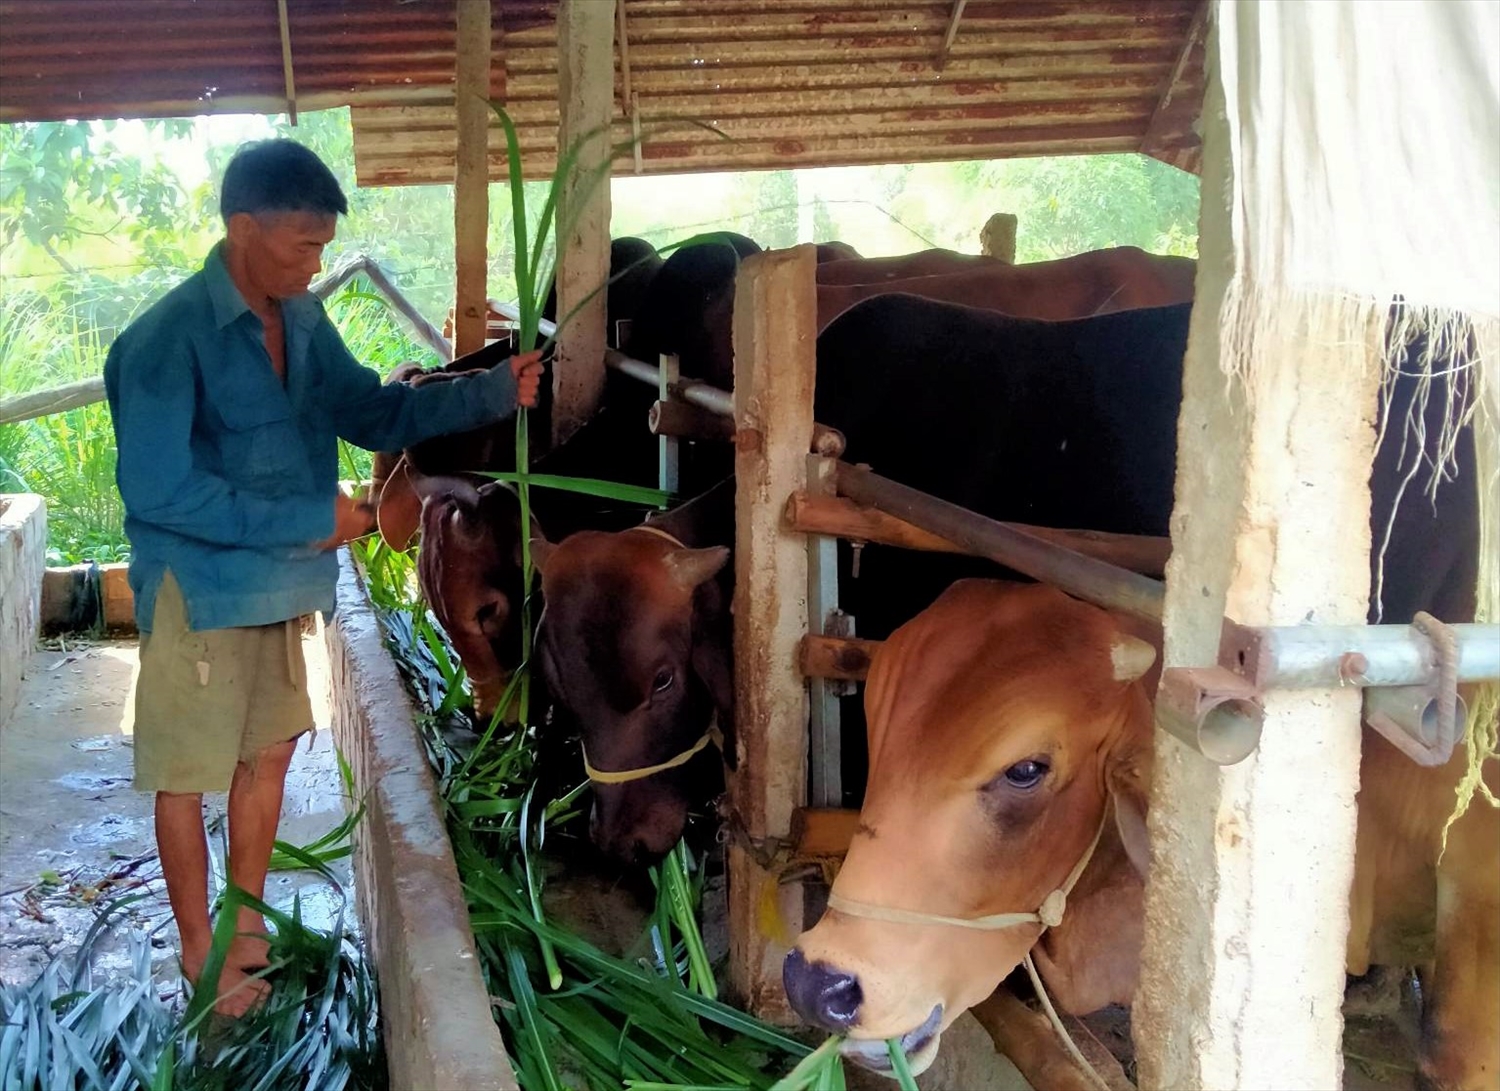 Gia đình ông Phan Quốc Khánh ở thôn 1, xã Hòa Thành, huyện Krông Bông vay vốn 50 triệu đồng từ Ngân hàng CHSXH huyện về đầu tư chăn nuôi bò, mang lại hiệu quả kinh tế cho gia đình 